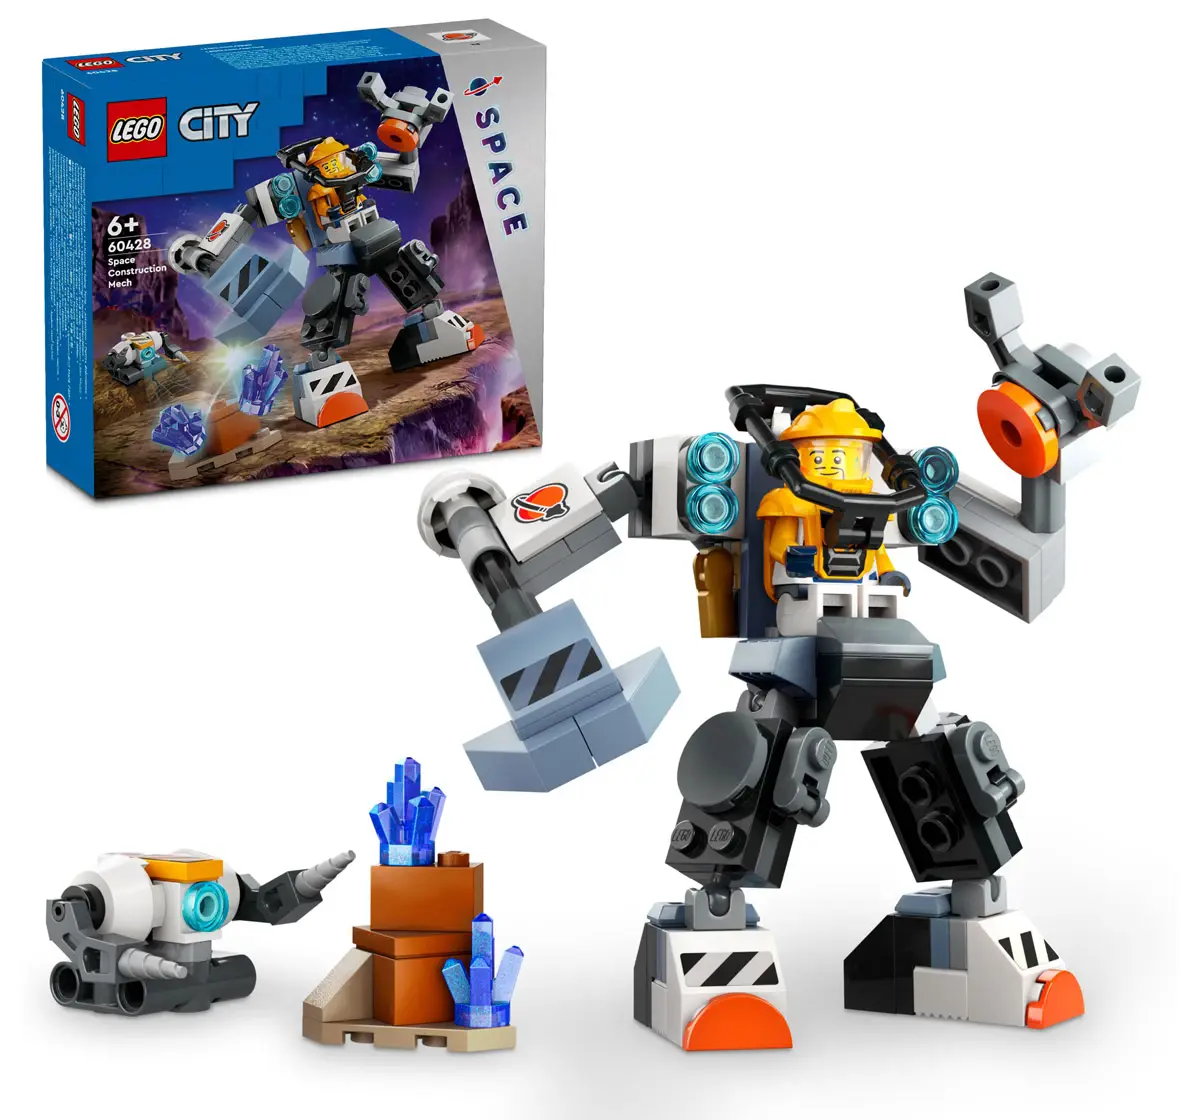 Lego City Space Construction Mech Suit Toy 60428 Multicolour For Kids Ages 6Y+ (140 Pieces) 